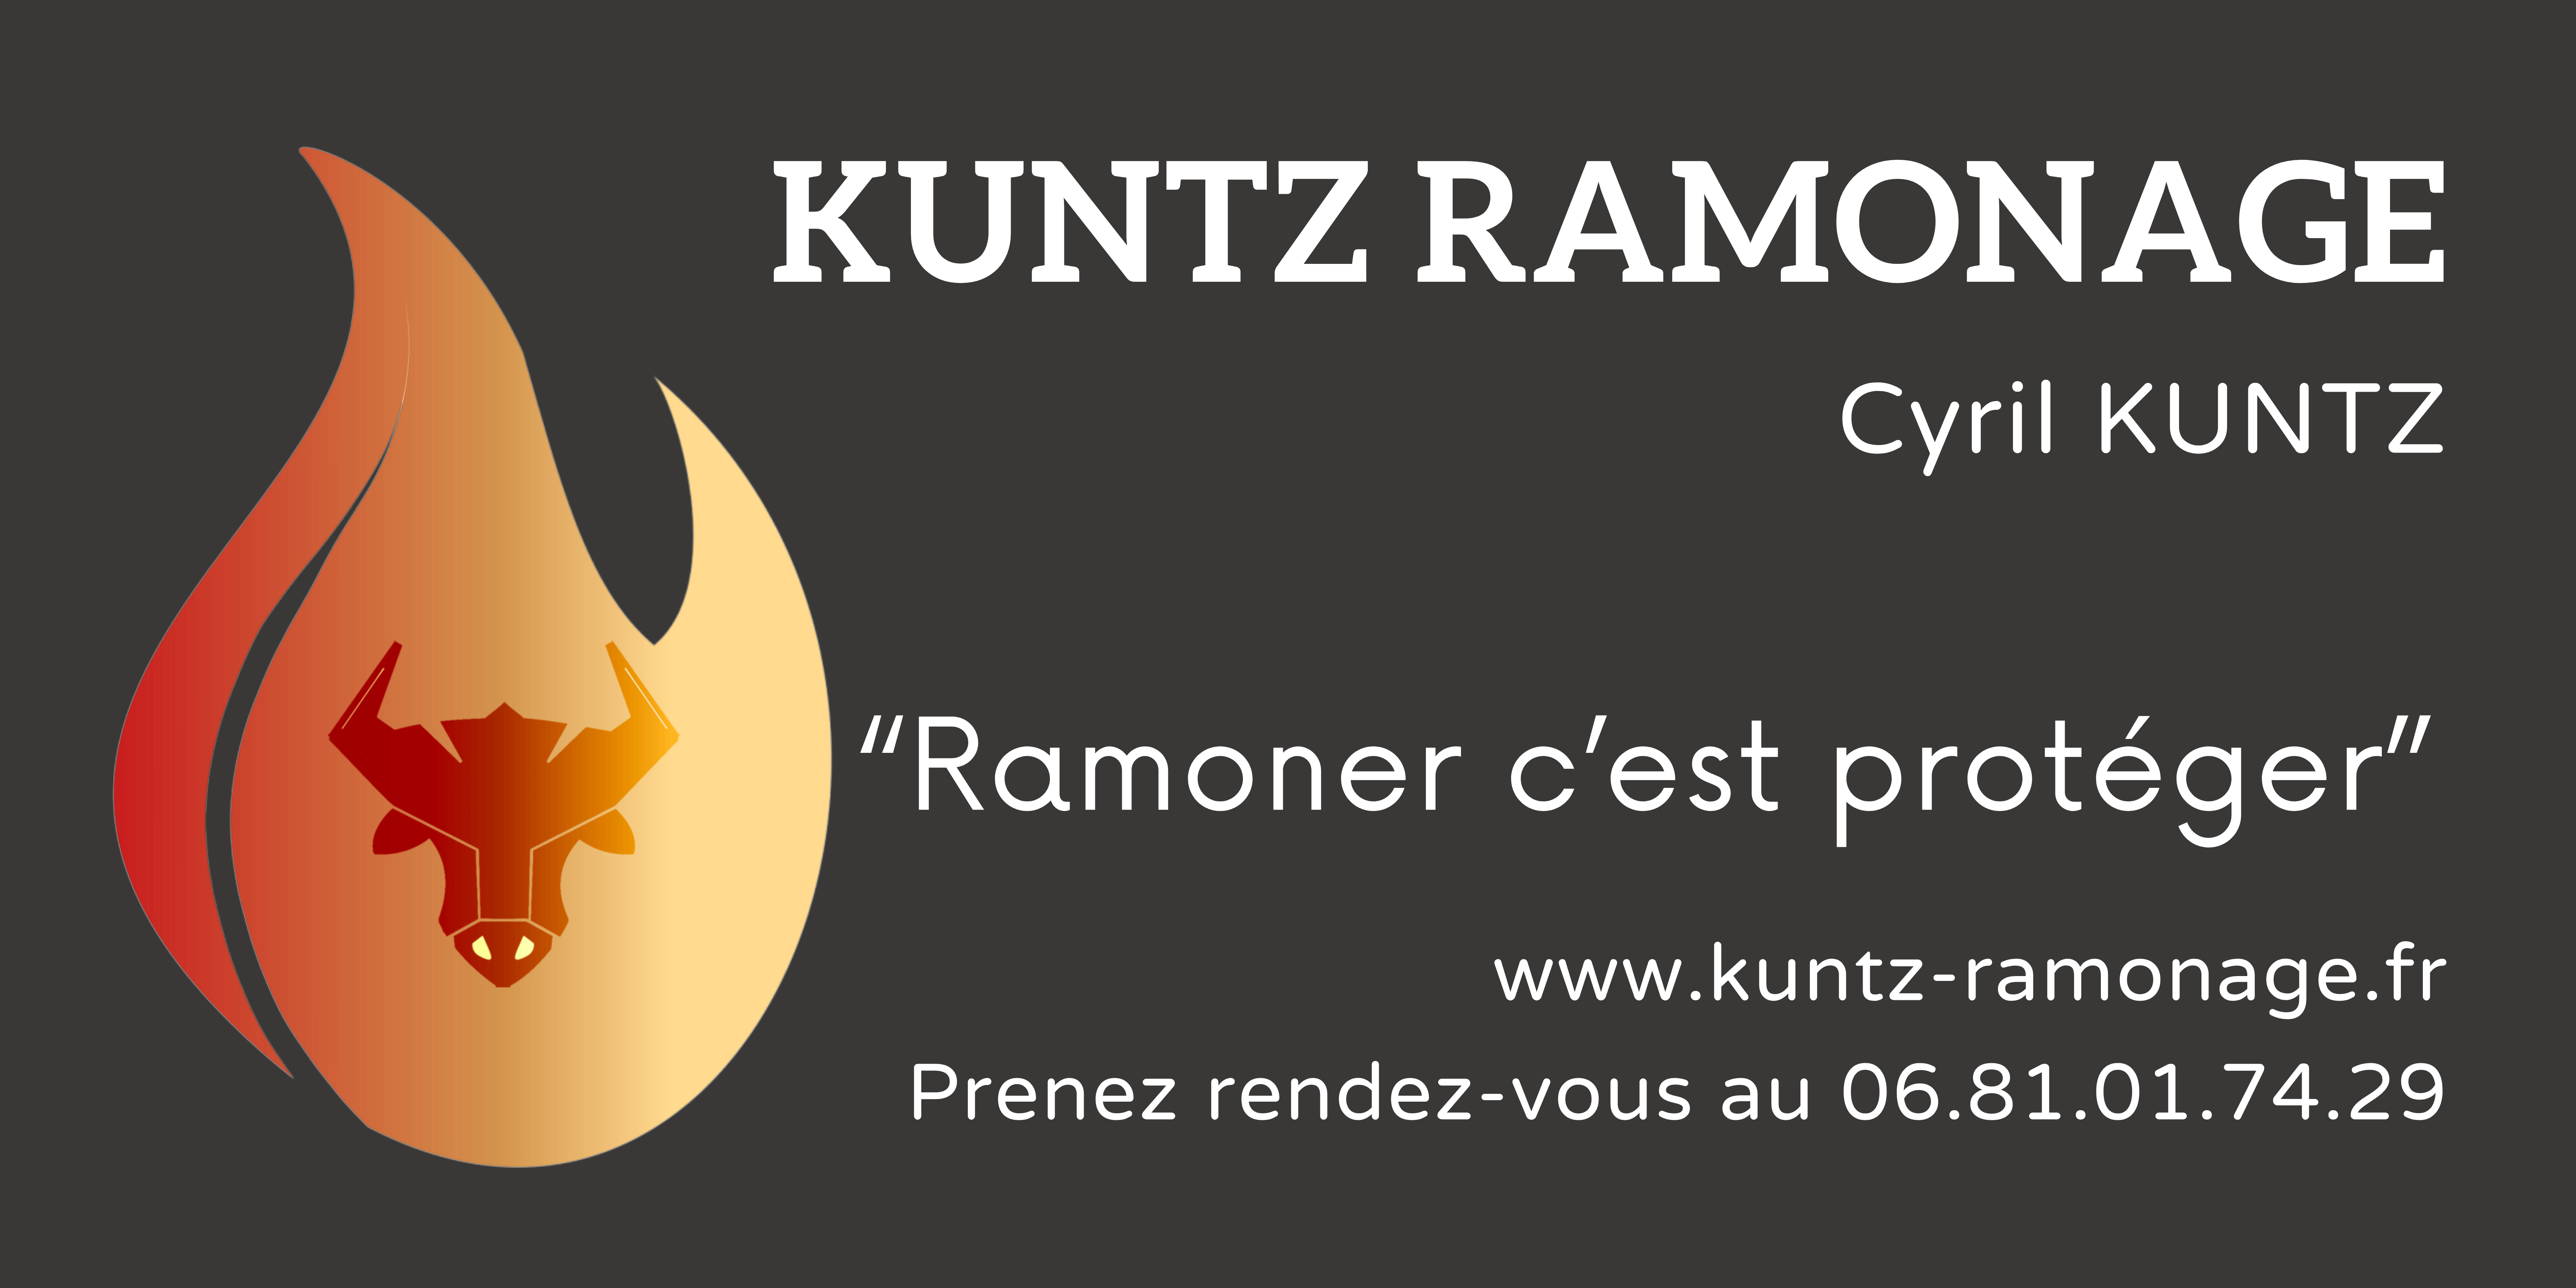 Kuntz Ramonage